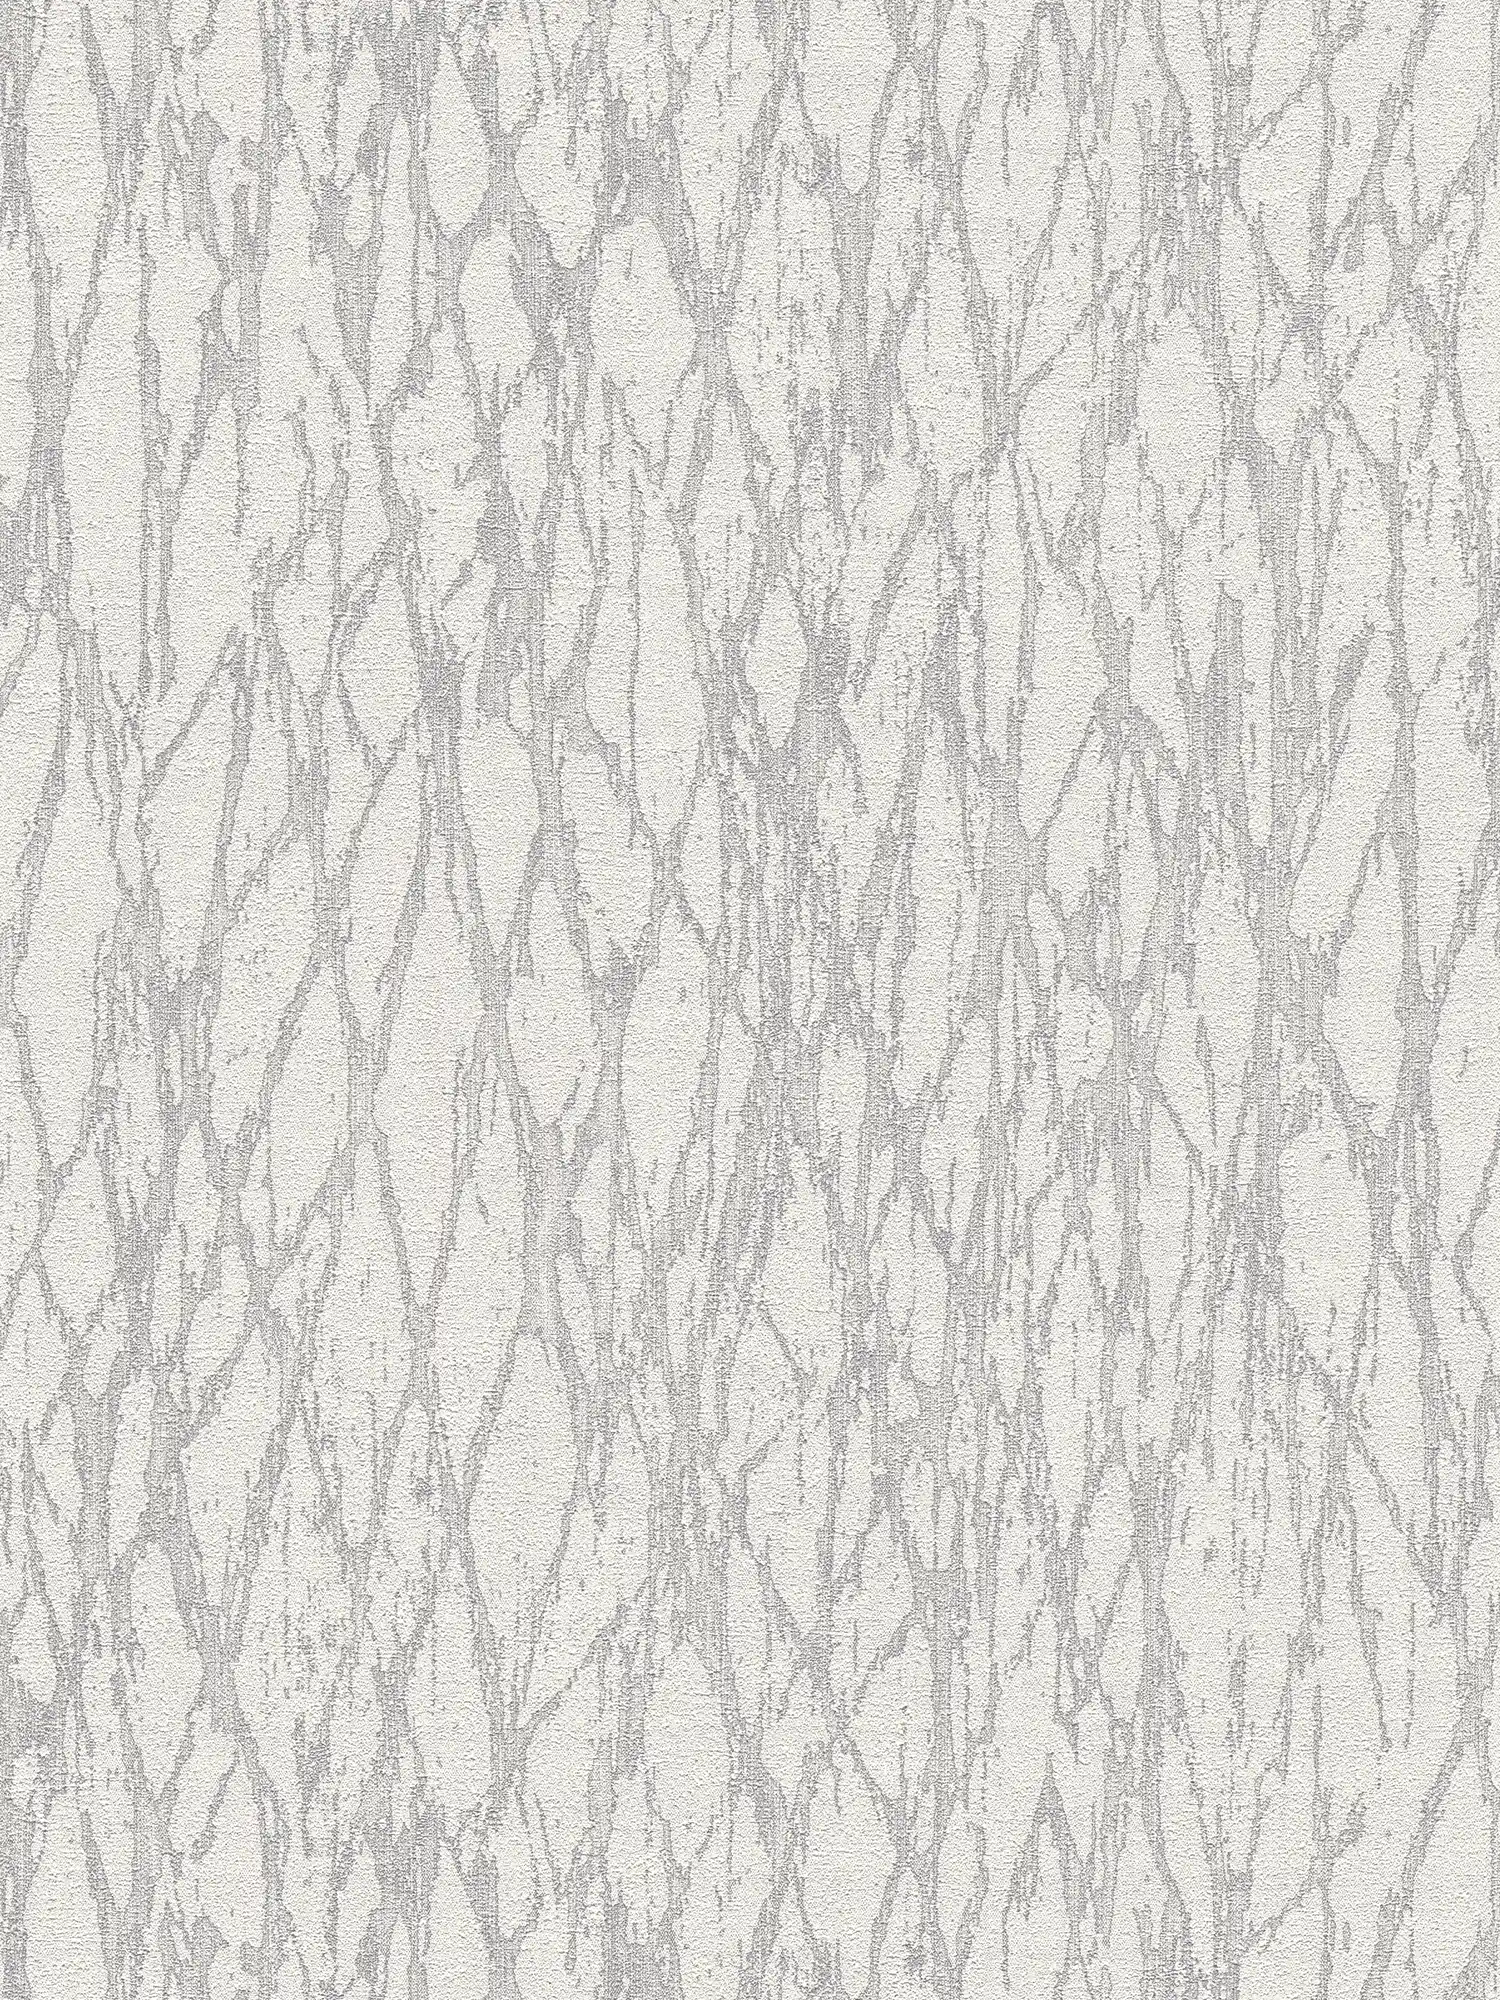 Vliesbehang met abstract lijnenpatroon licht glanzend - wit, grijs, zilver
